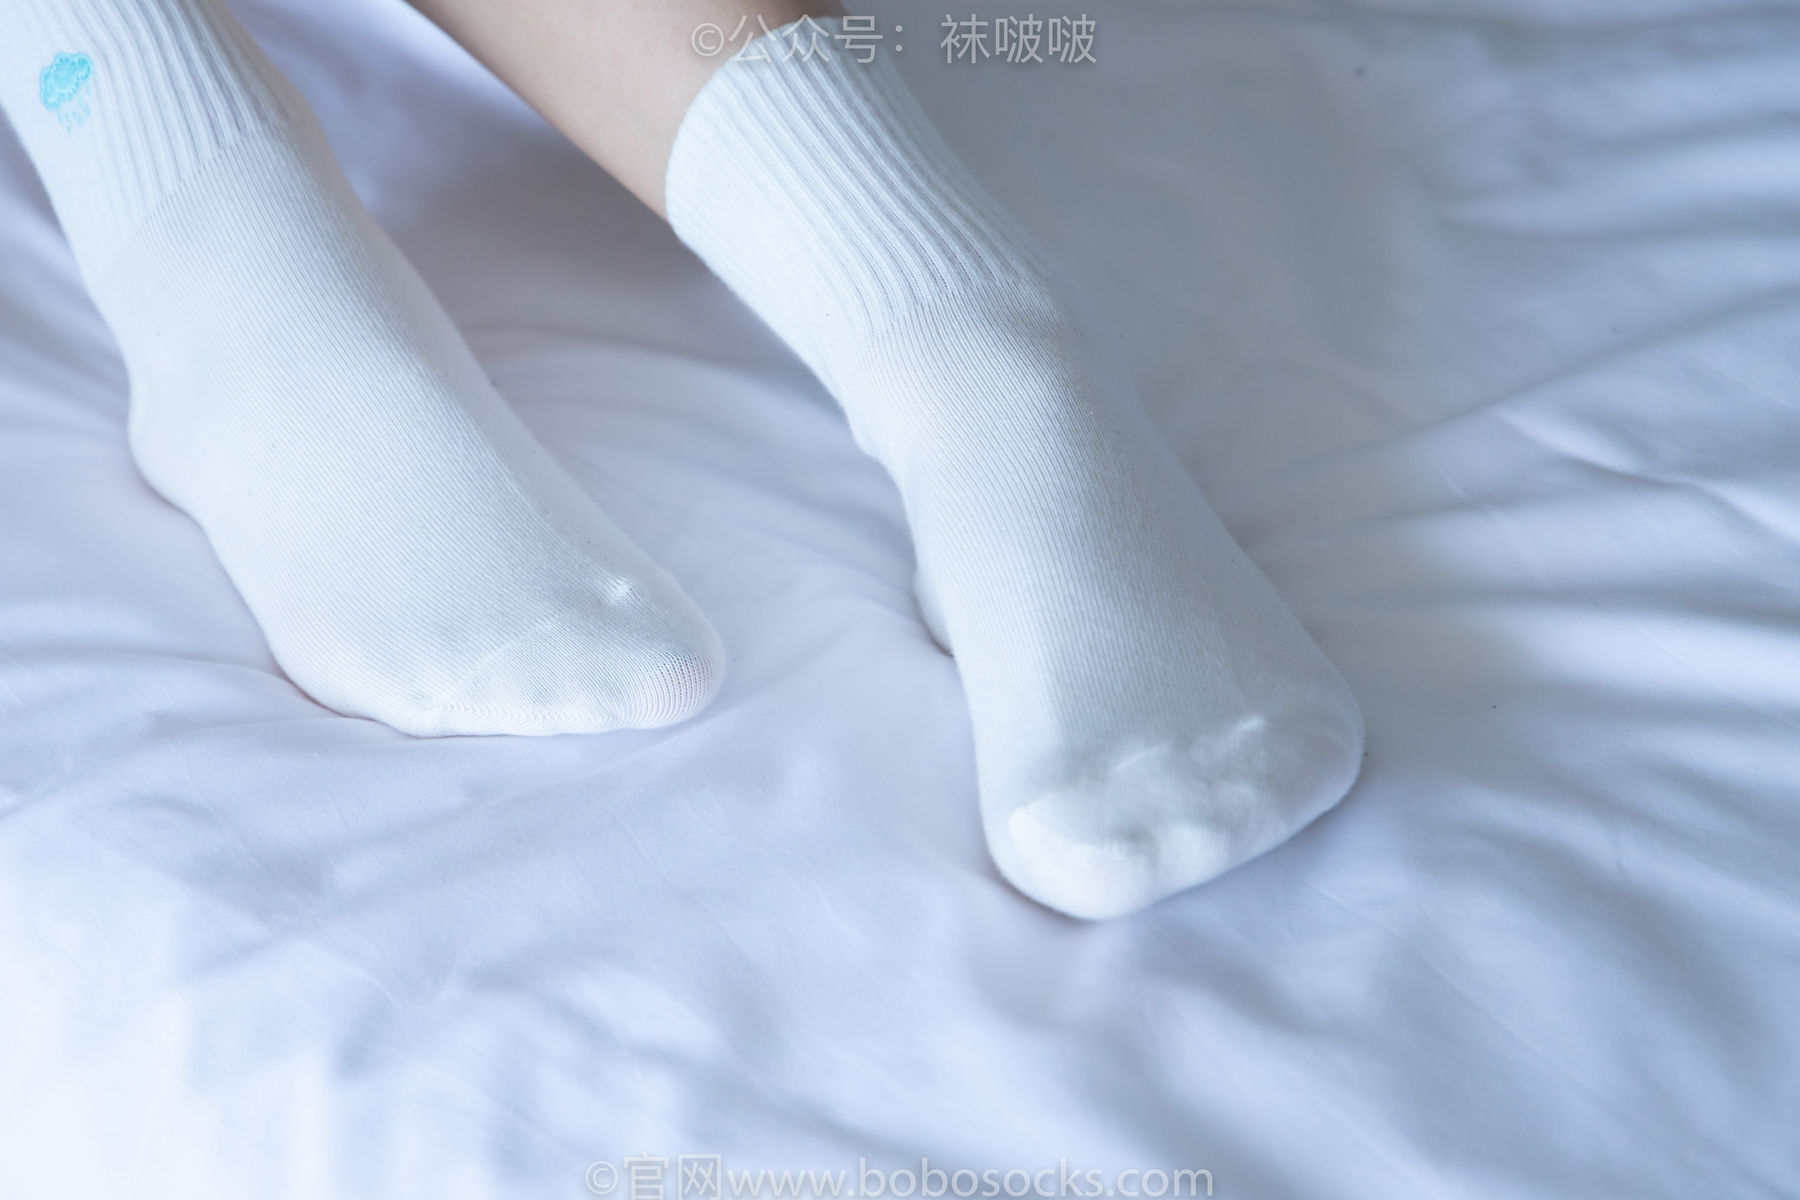 BoBoSocks袜啵啵 No.009 果冻-耐克板鞋、白棉袜、裸足/(130P)